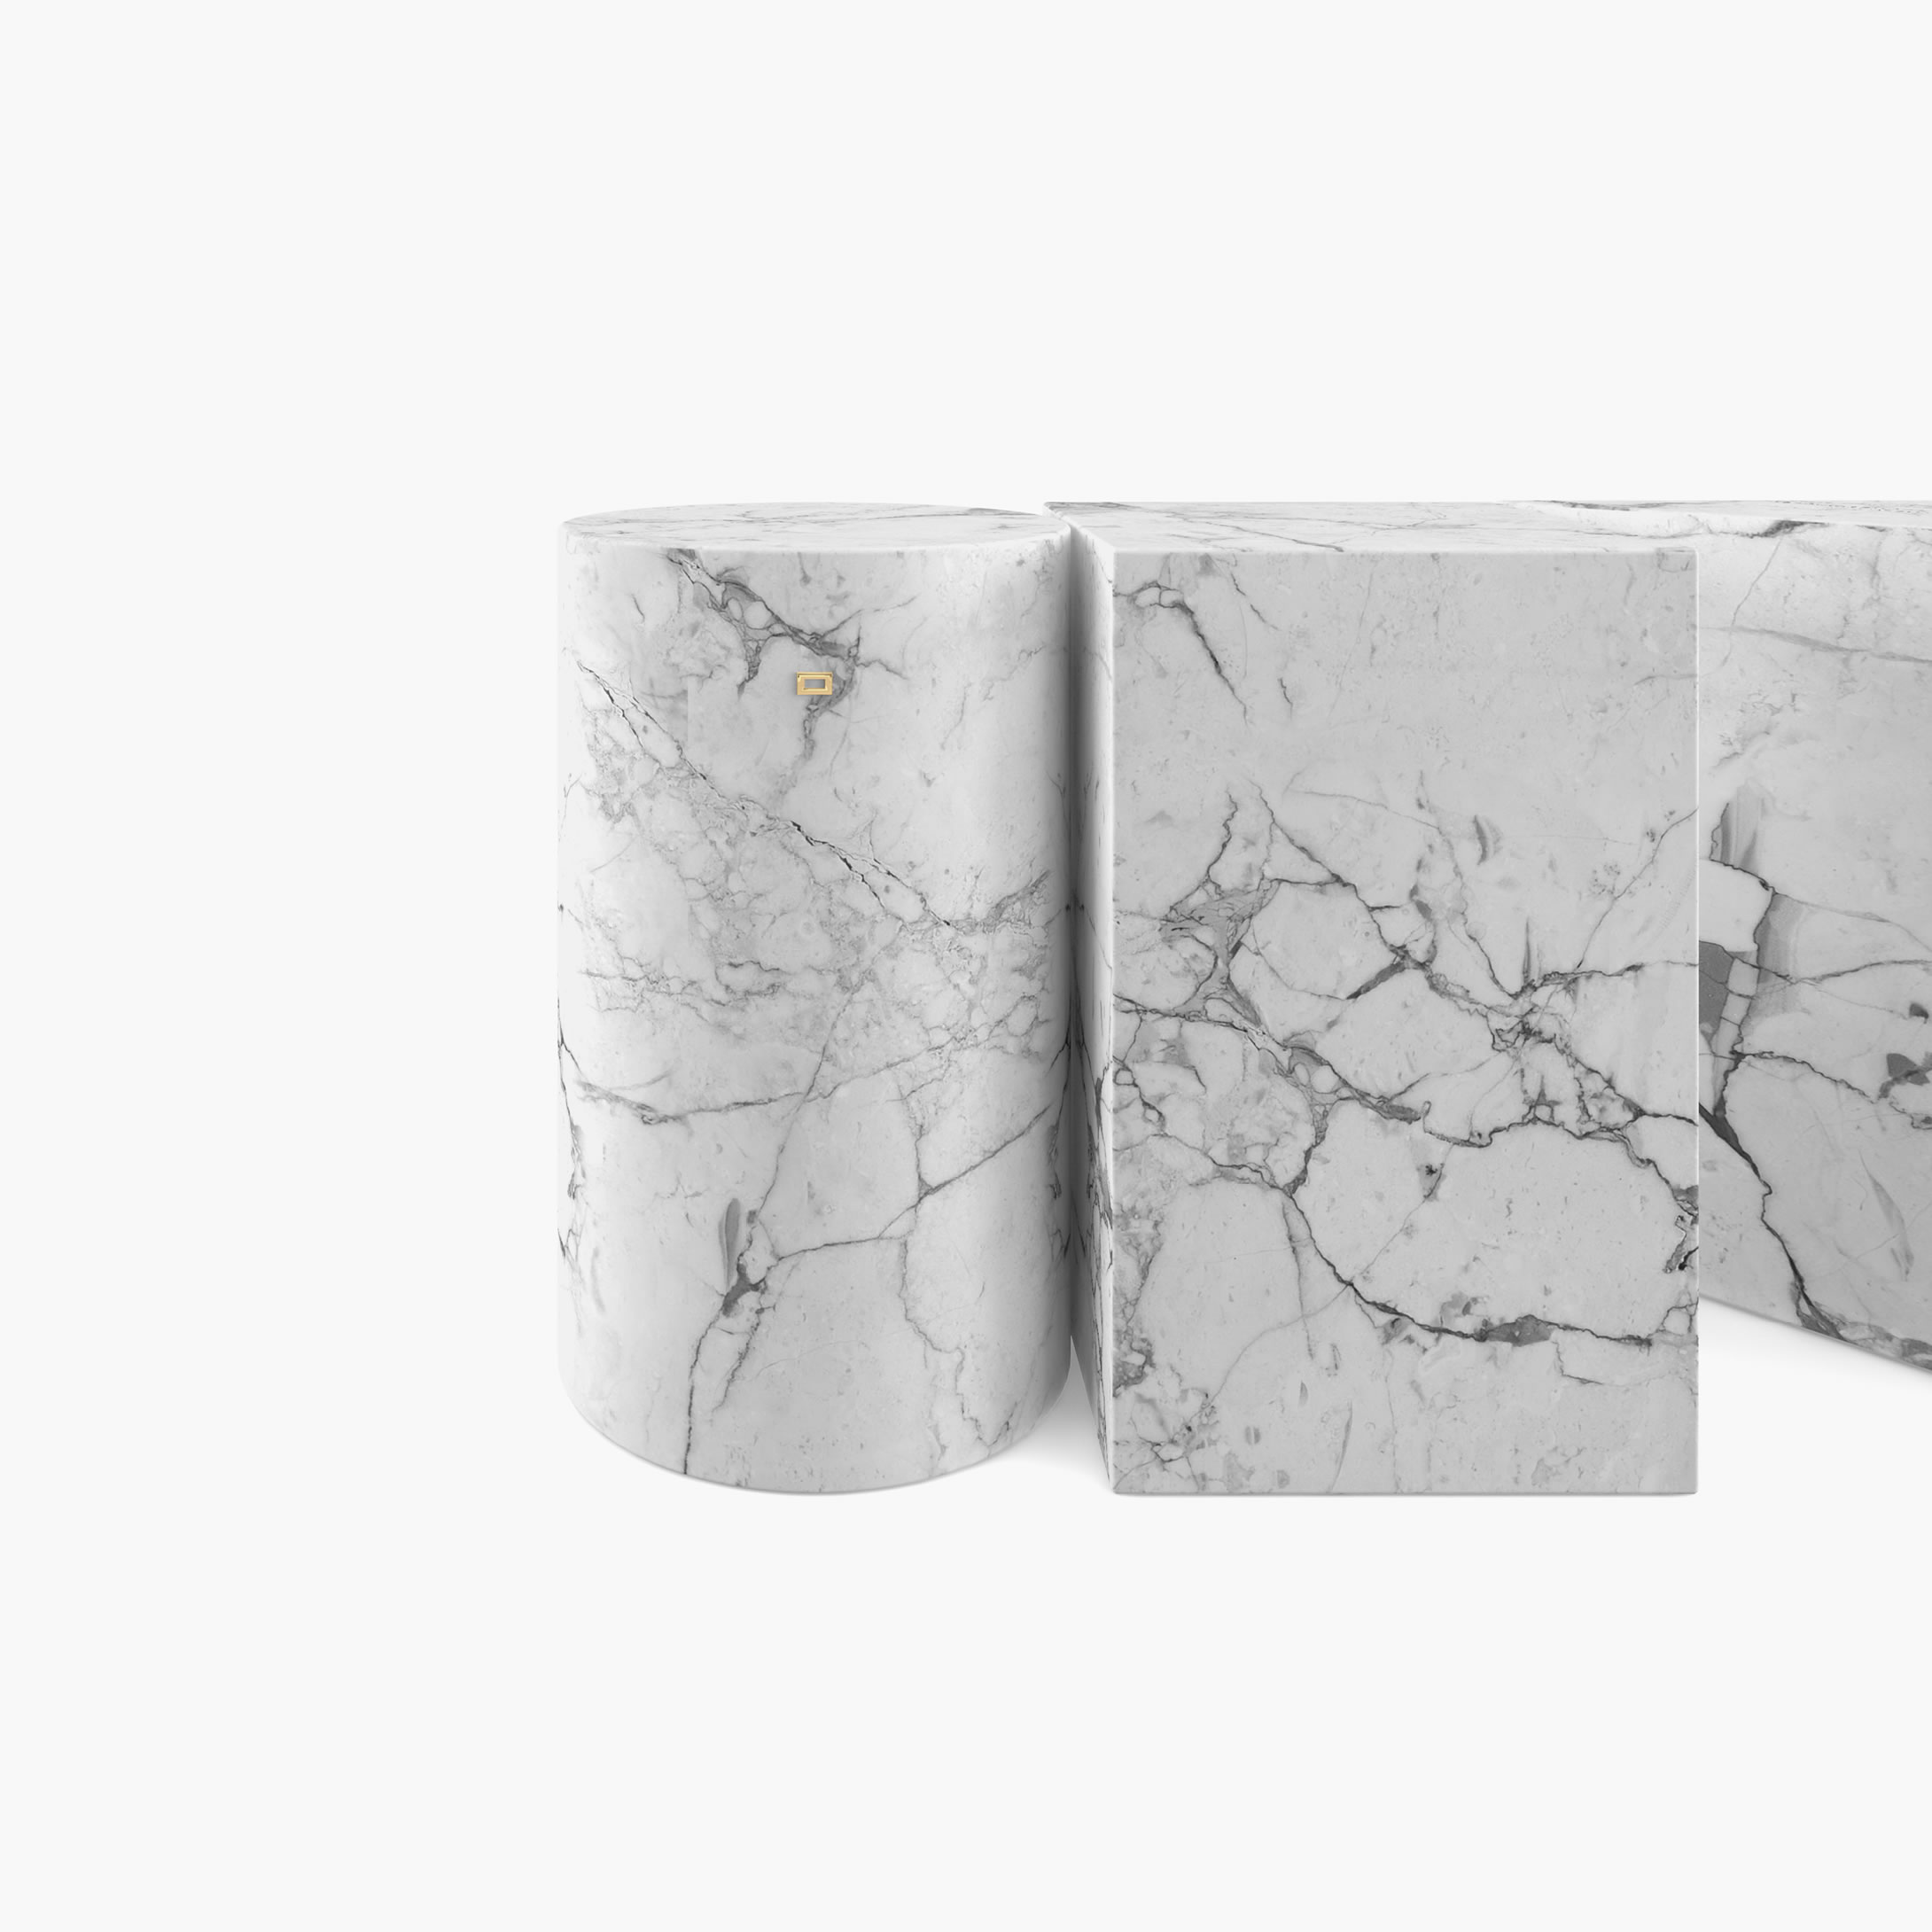 Beistelltisch Zylinder Quader Prisma Weiss Arabescato Marmor minimalistisch Wohnzimmer Innenarchitektur Beistelltische FS 1 FELIX SCHWAKE